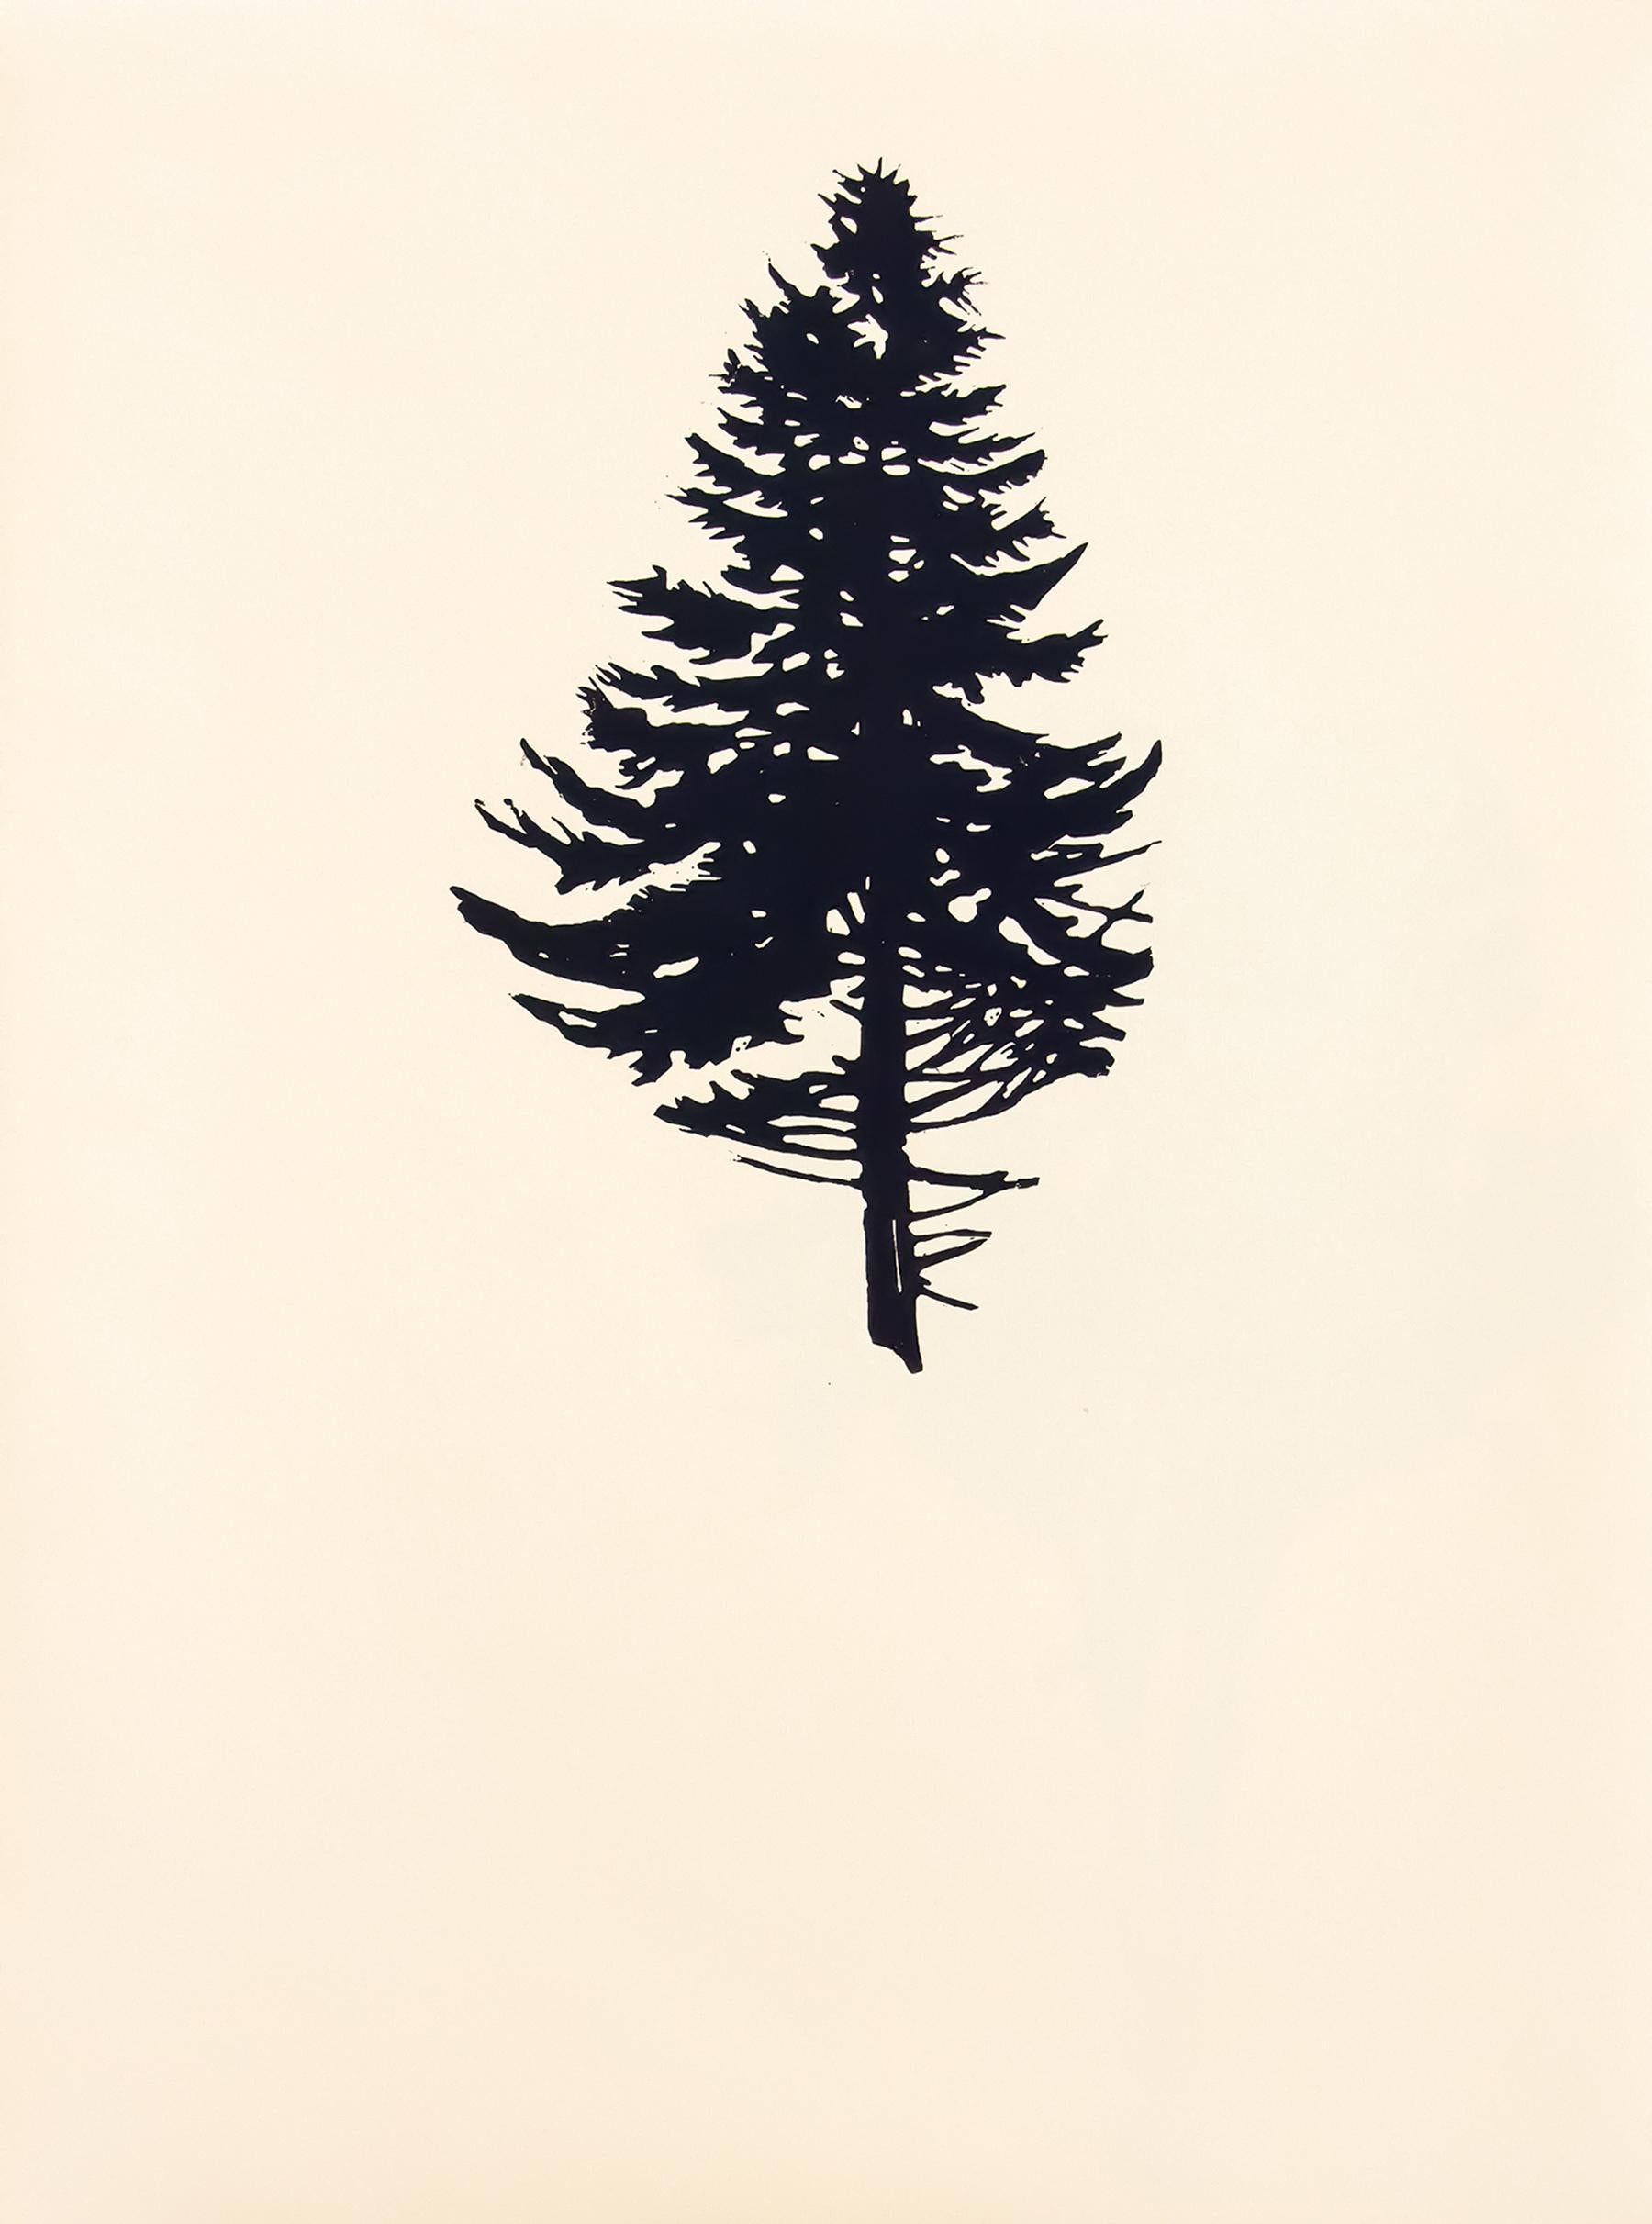 Der Wald ou La forêt consiste en neuf impressions sur bois dans un seul portfolio. Dans chacune des neuf images, un seul arbre est imprimé proprement en noir uni sur du papier d'art d'archive de couleur manille. Les arbres - grands, courts, hauts ou